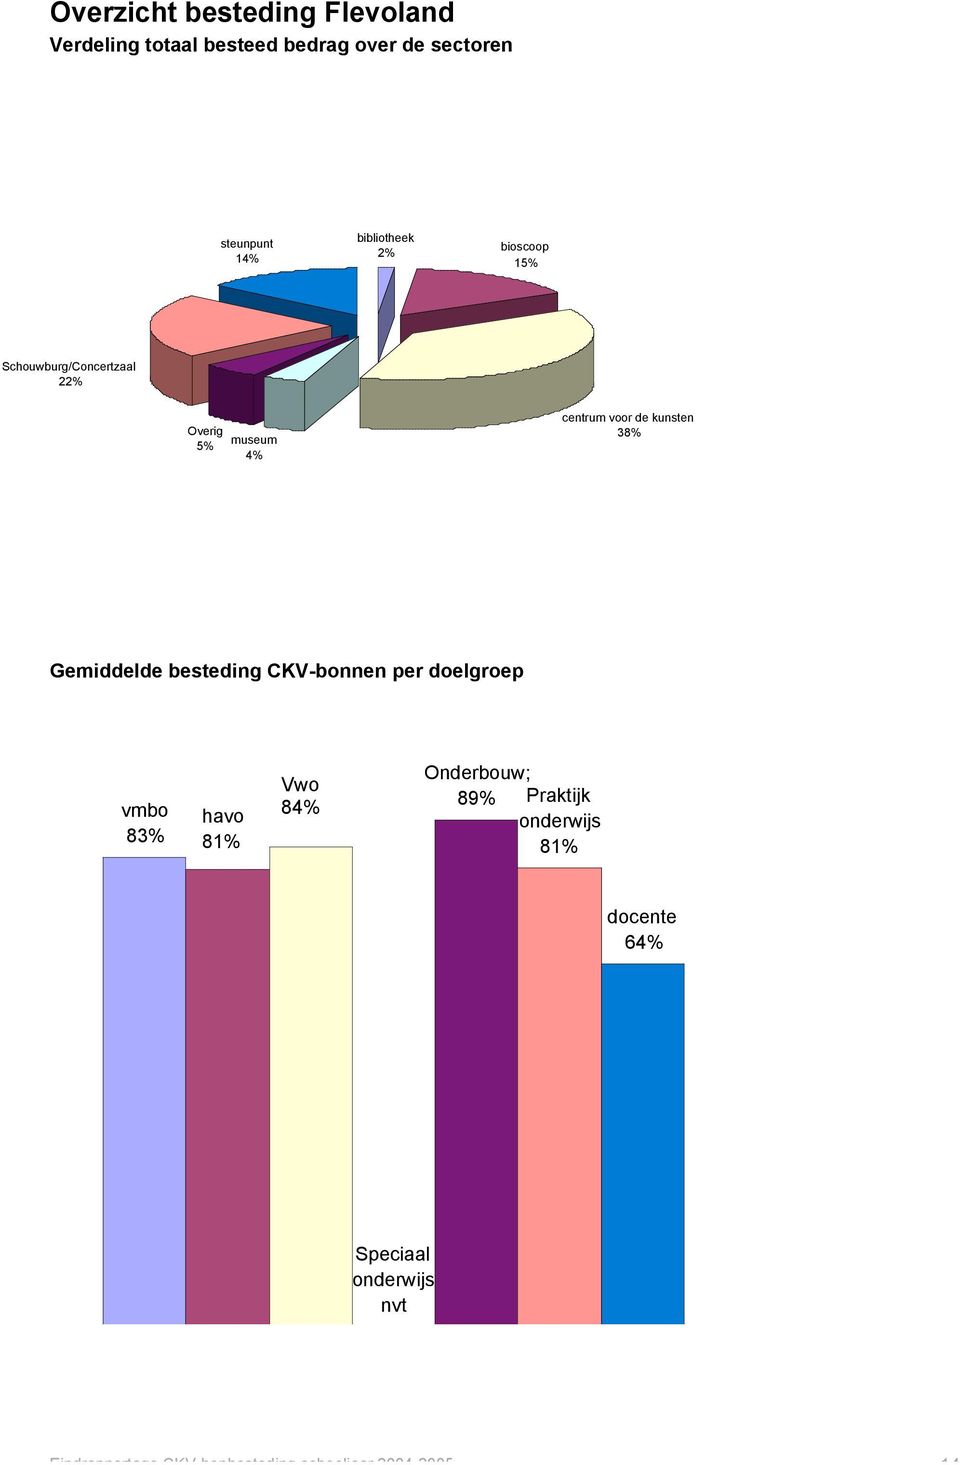 Gemiddelde besteding CKV-bonnen per doelgroep vmbo 83% havo 8 Vwo 84% Onderbouw;